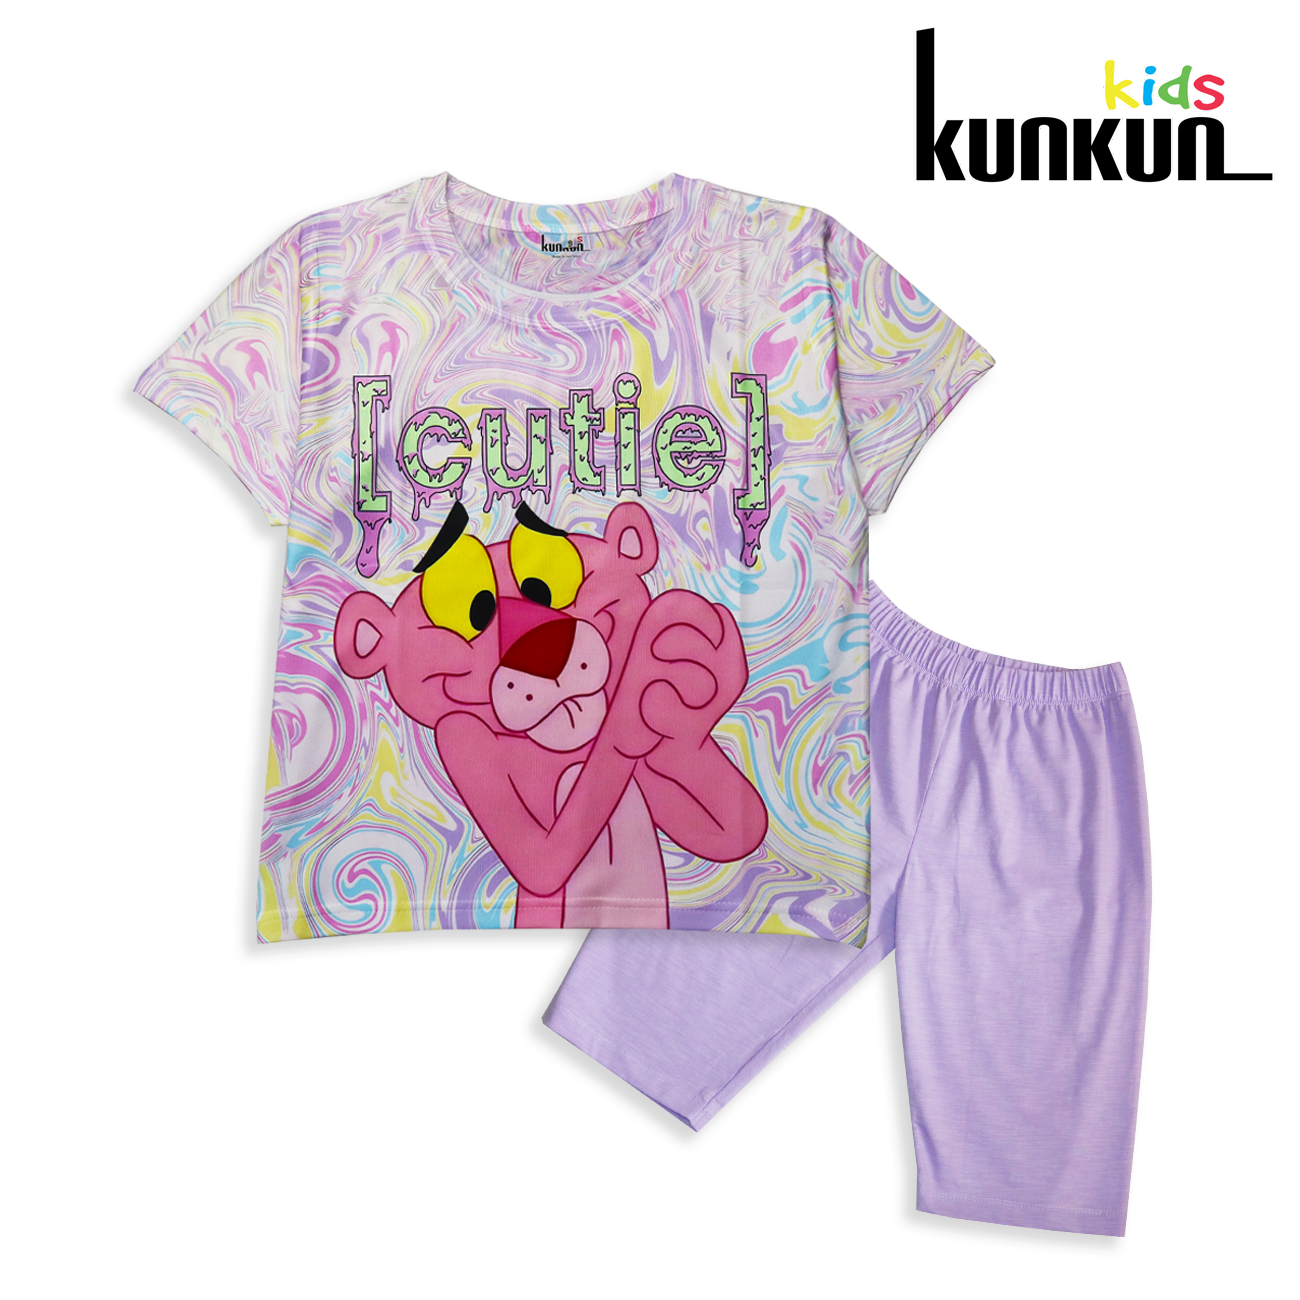 Quần áo bé gái kunkunkid in 3d hình gấu dâu Lotso TC1123-1121-1122-1120-1119- đồ bộ trẻ em size từ 10-60kg